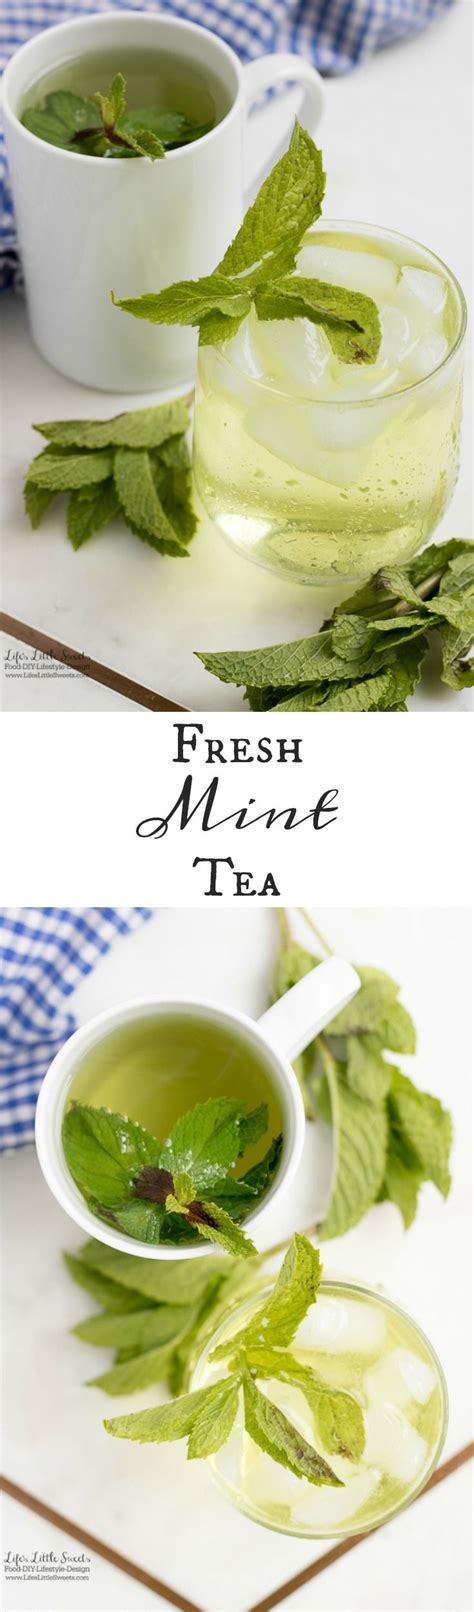 Fresh Mint Tea Recipe Mint Tea Recipe Recipes Tea Recipes